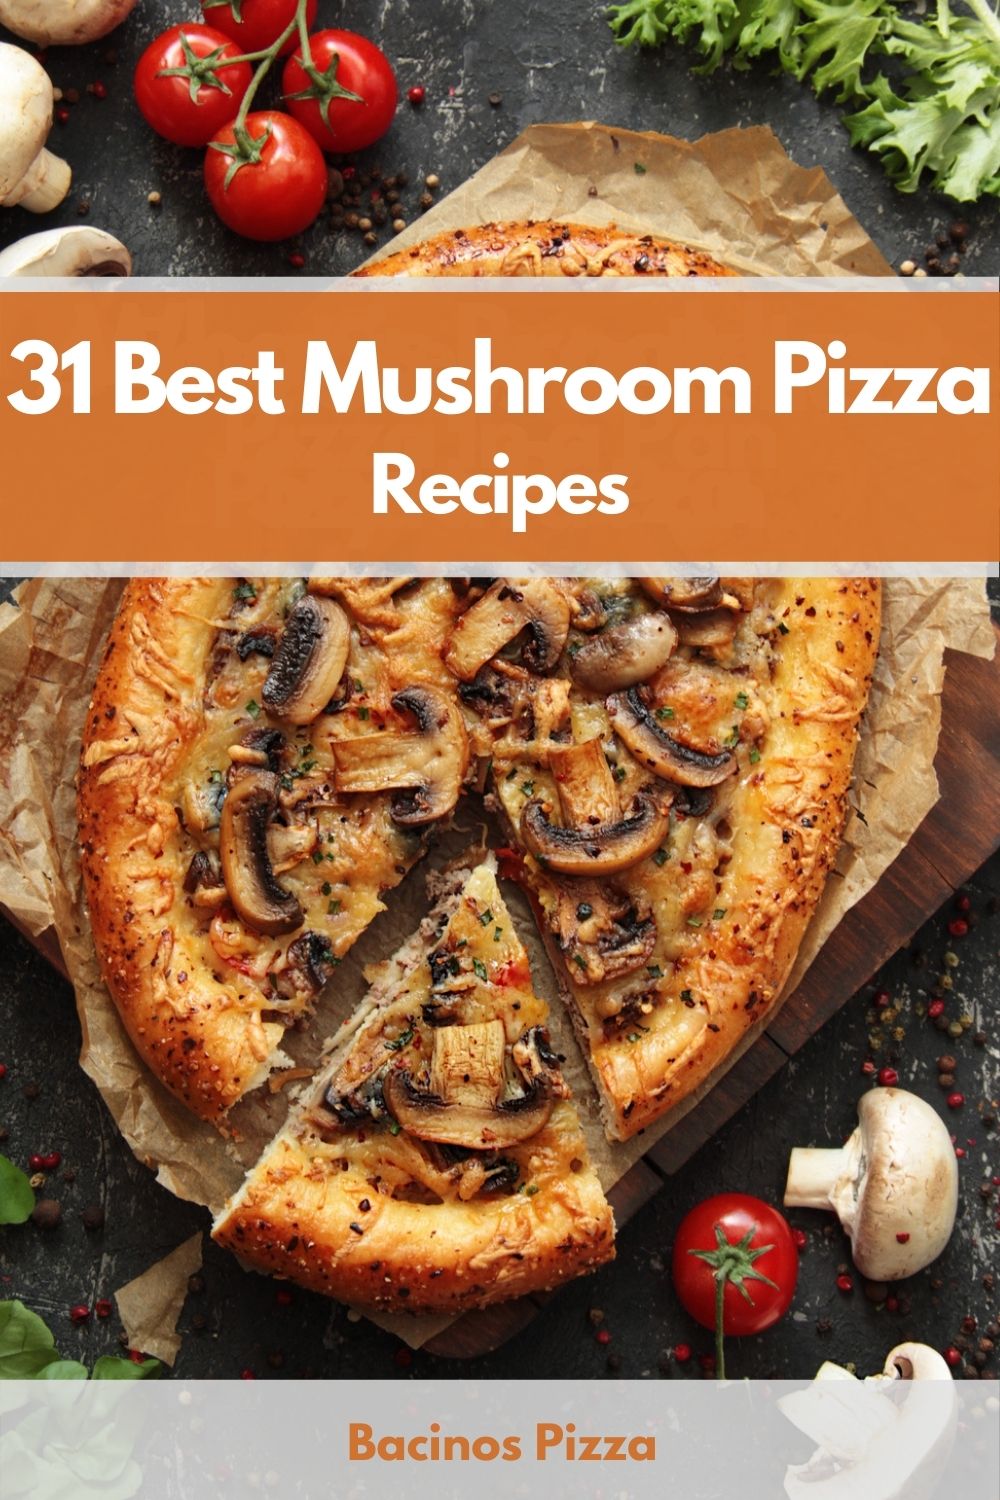 31 Best Mushroom Pizza Recipes pin